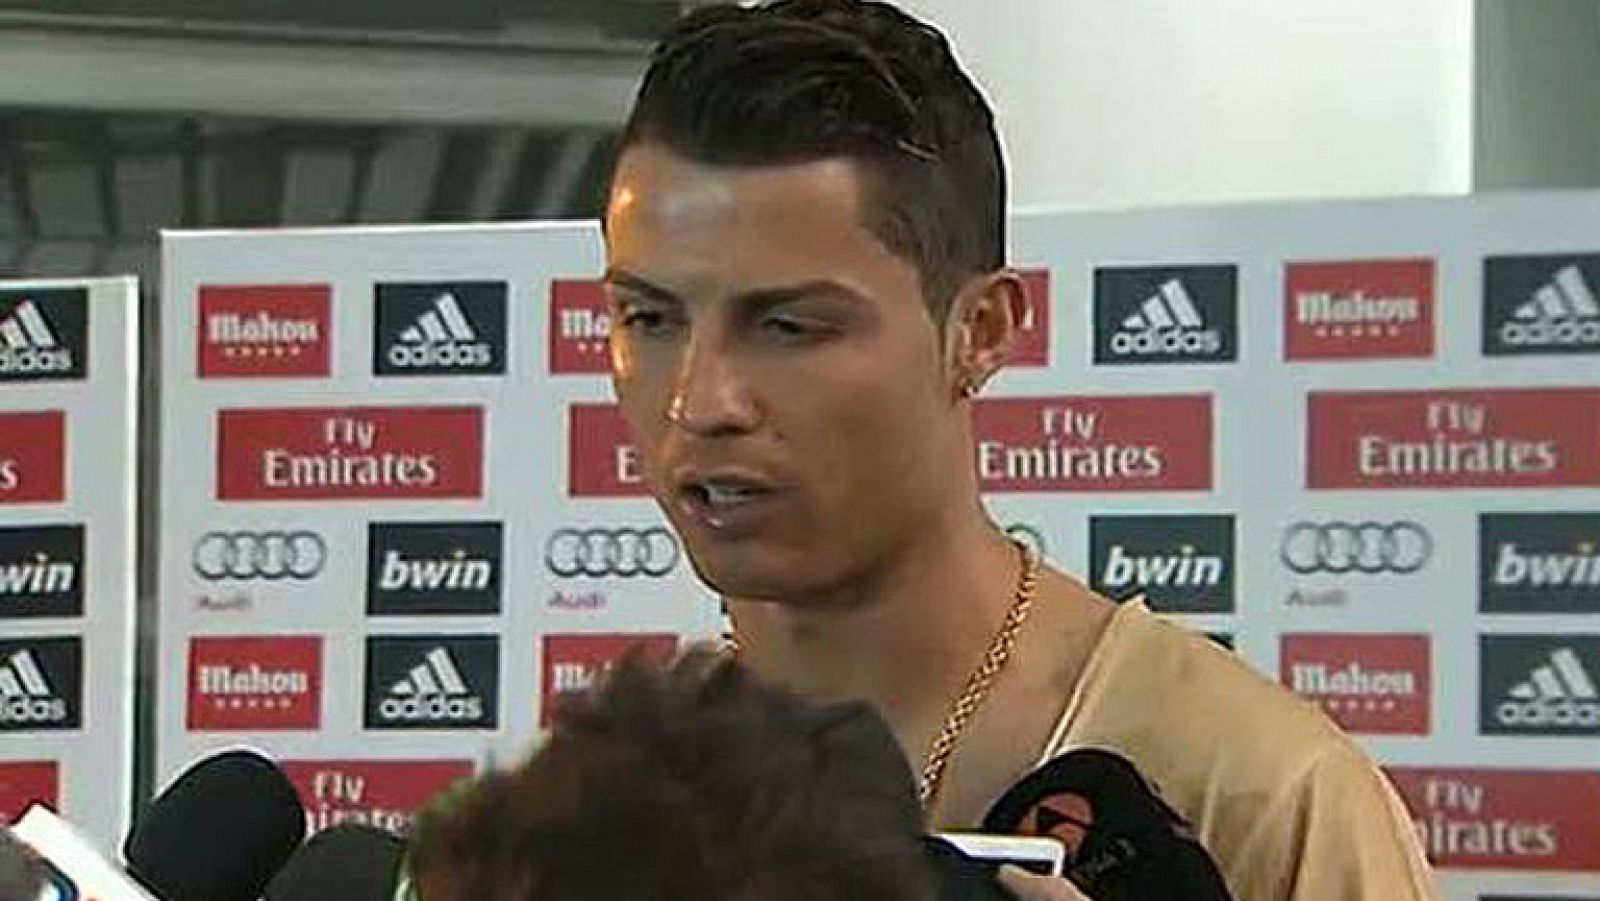 Sergio Rarmos y Cristiano Ronaldo criticaron con dureza el arbitraje de Undiano Mallenco en el partido contra el Barcelona después del partido en el que el colegiado señaló tres penaltis.